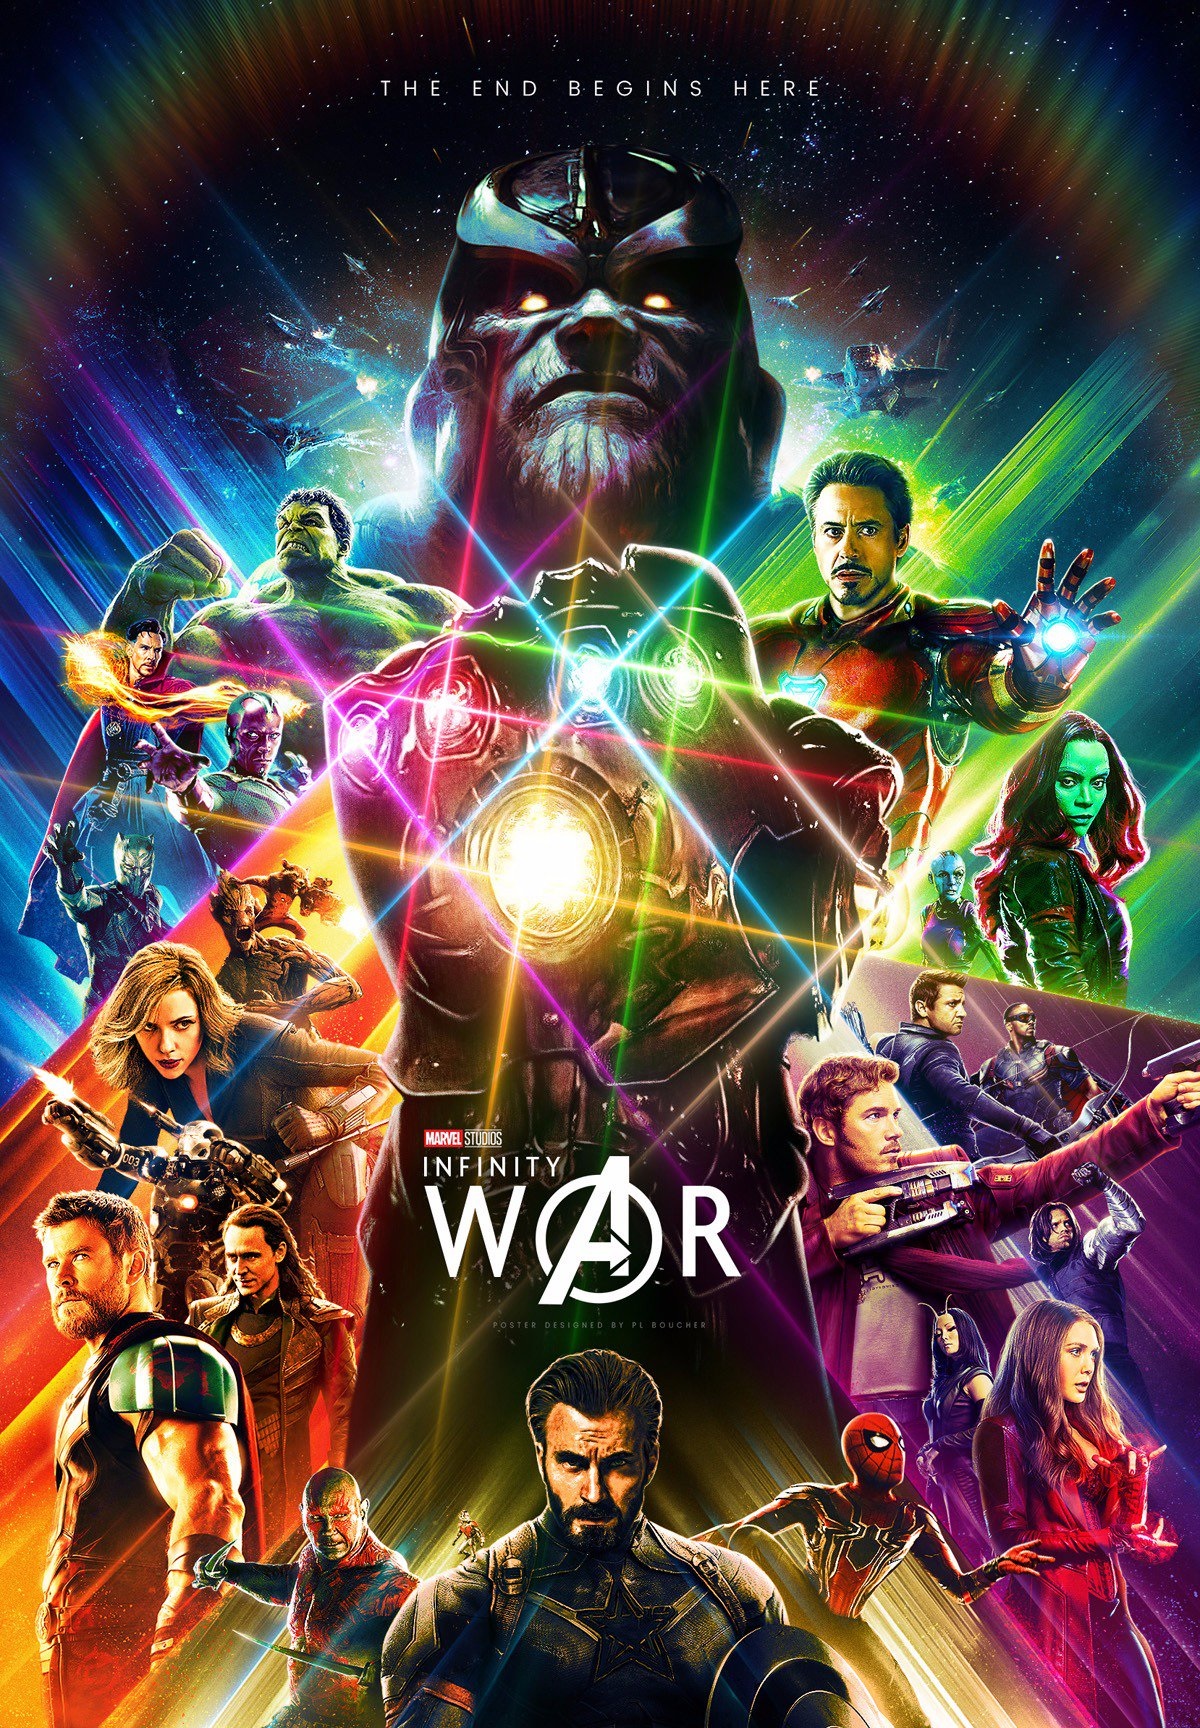 Fan-made Avengers: Infinity War poster by artist Pierre-Luc Boucher